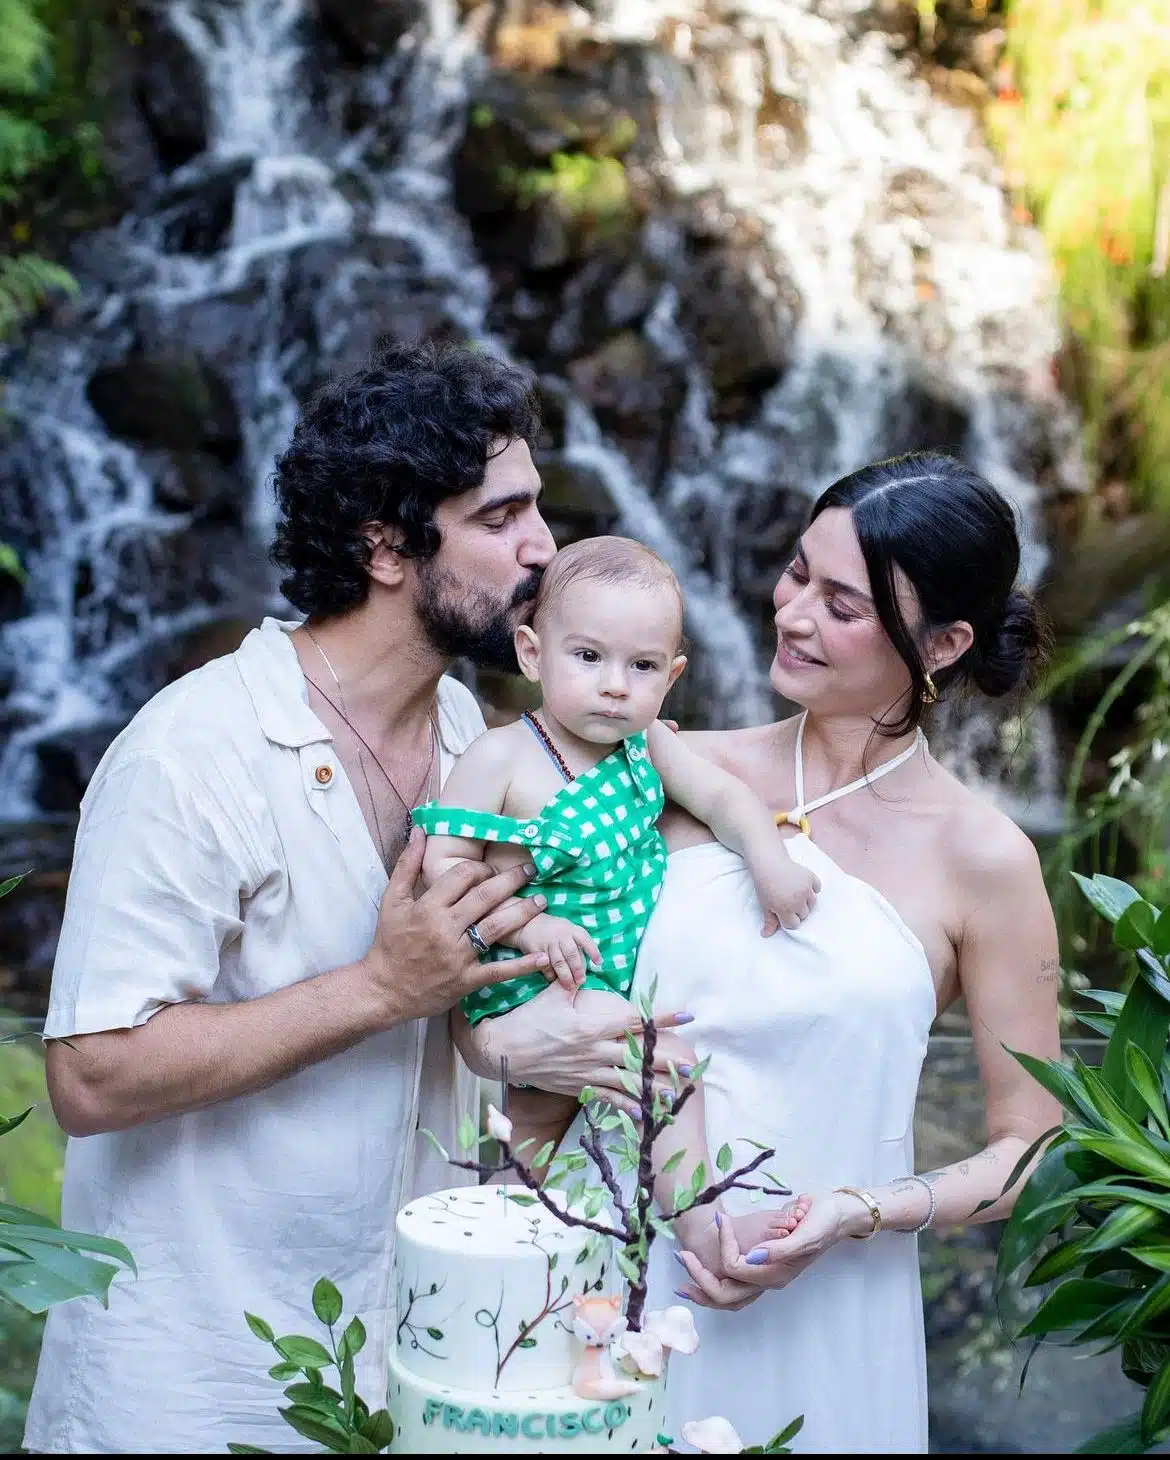 Thaila Ayala e Renato Góes posam com seu bebê na festa de um ano de Francisco